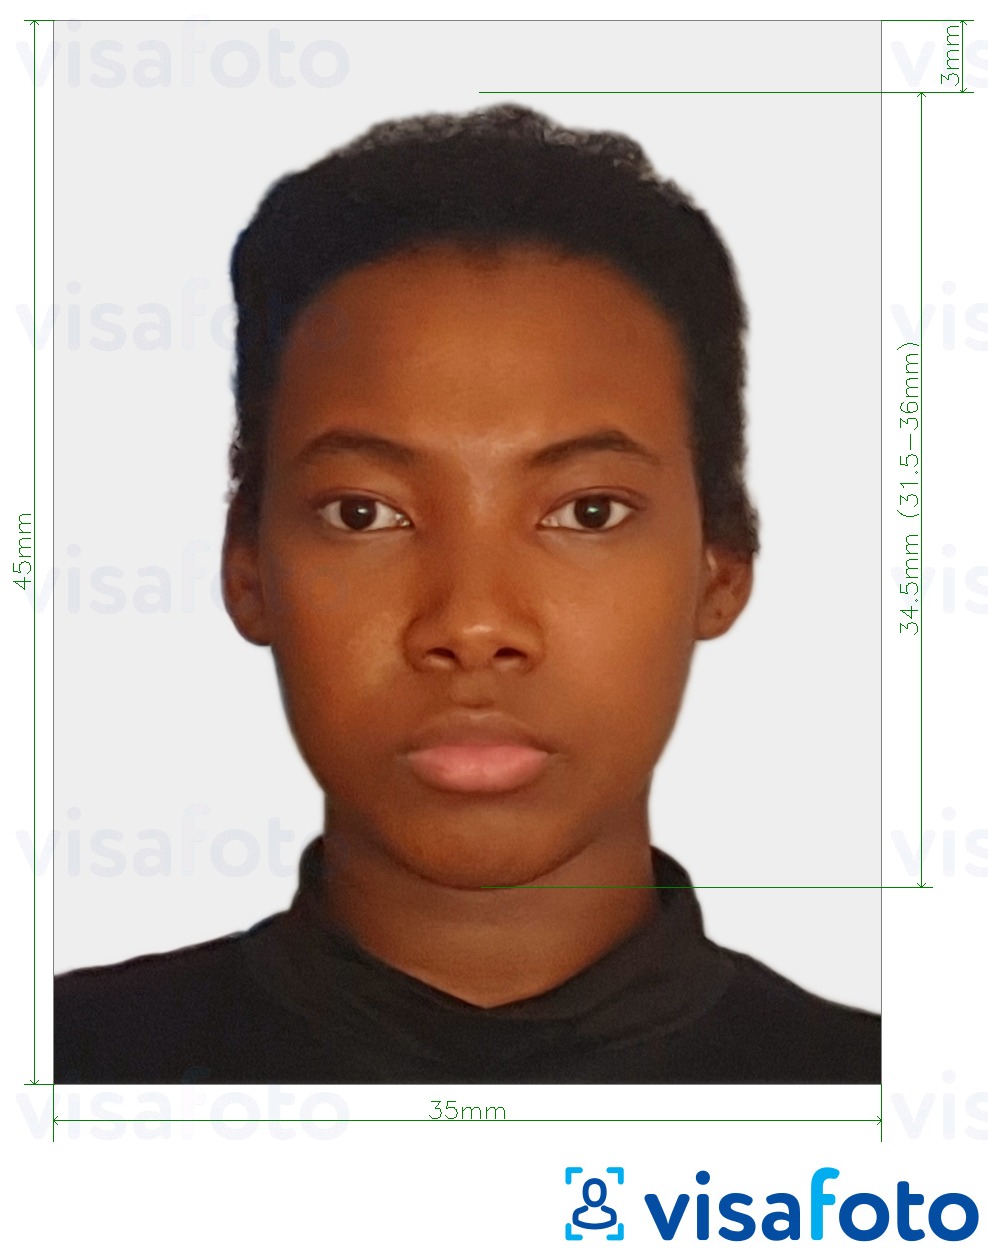 Exemplu de fotografie pentru Cote d'Ivoire viza 4.5x3.5 cm (45x35 mm) cu aceeași dimensiune indicată